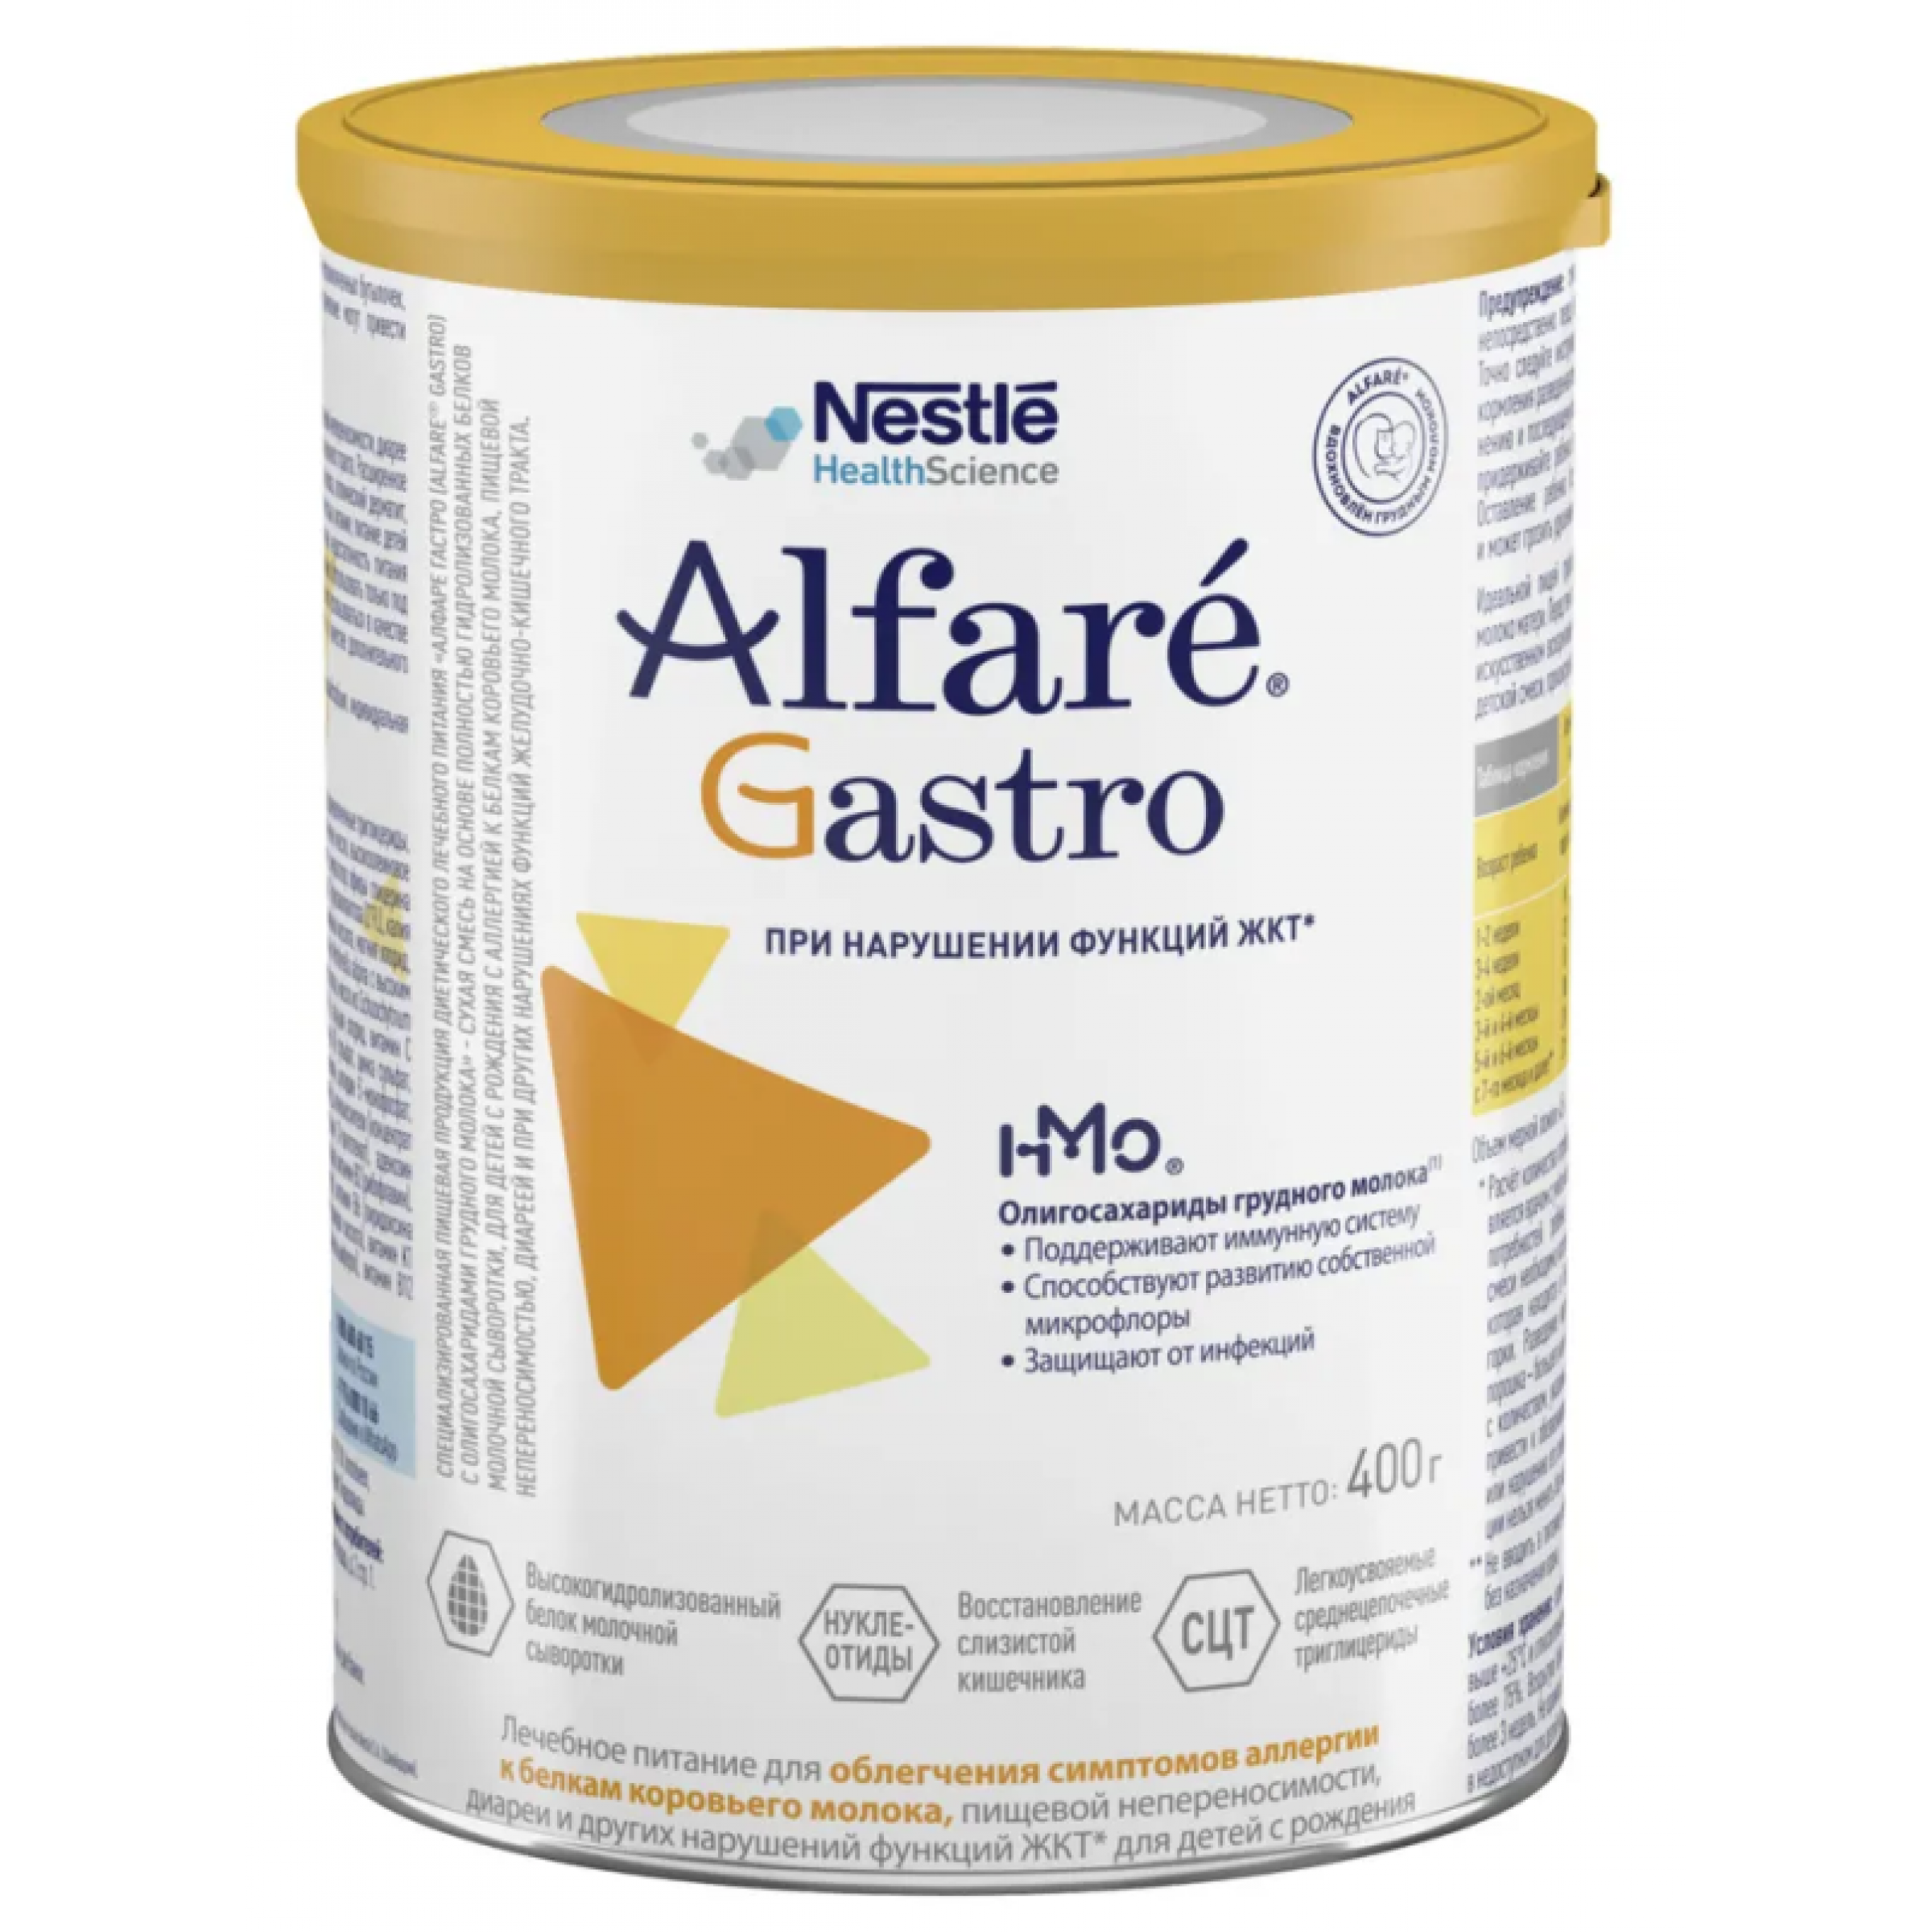 Лечебная смесь для детей с нарушенным пищеварением Alfare Gastro HMO, 400 г